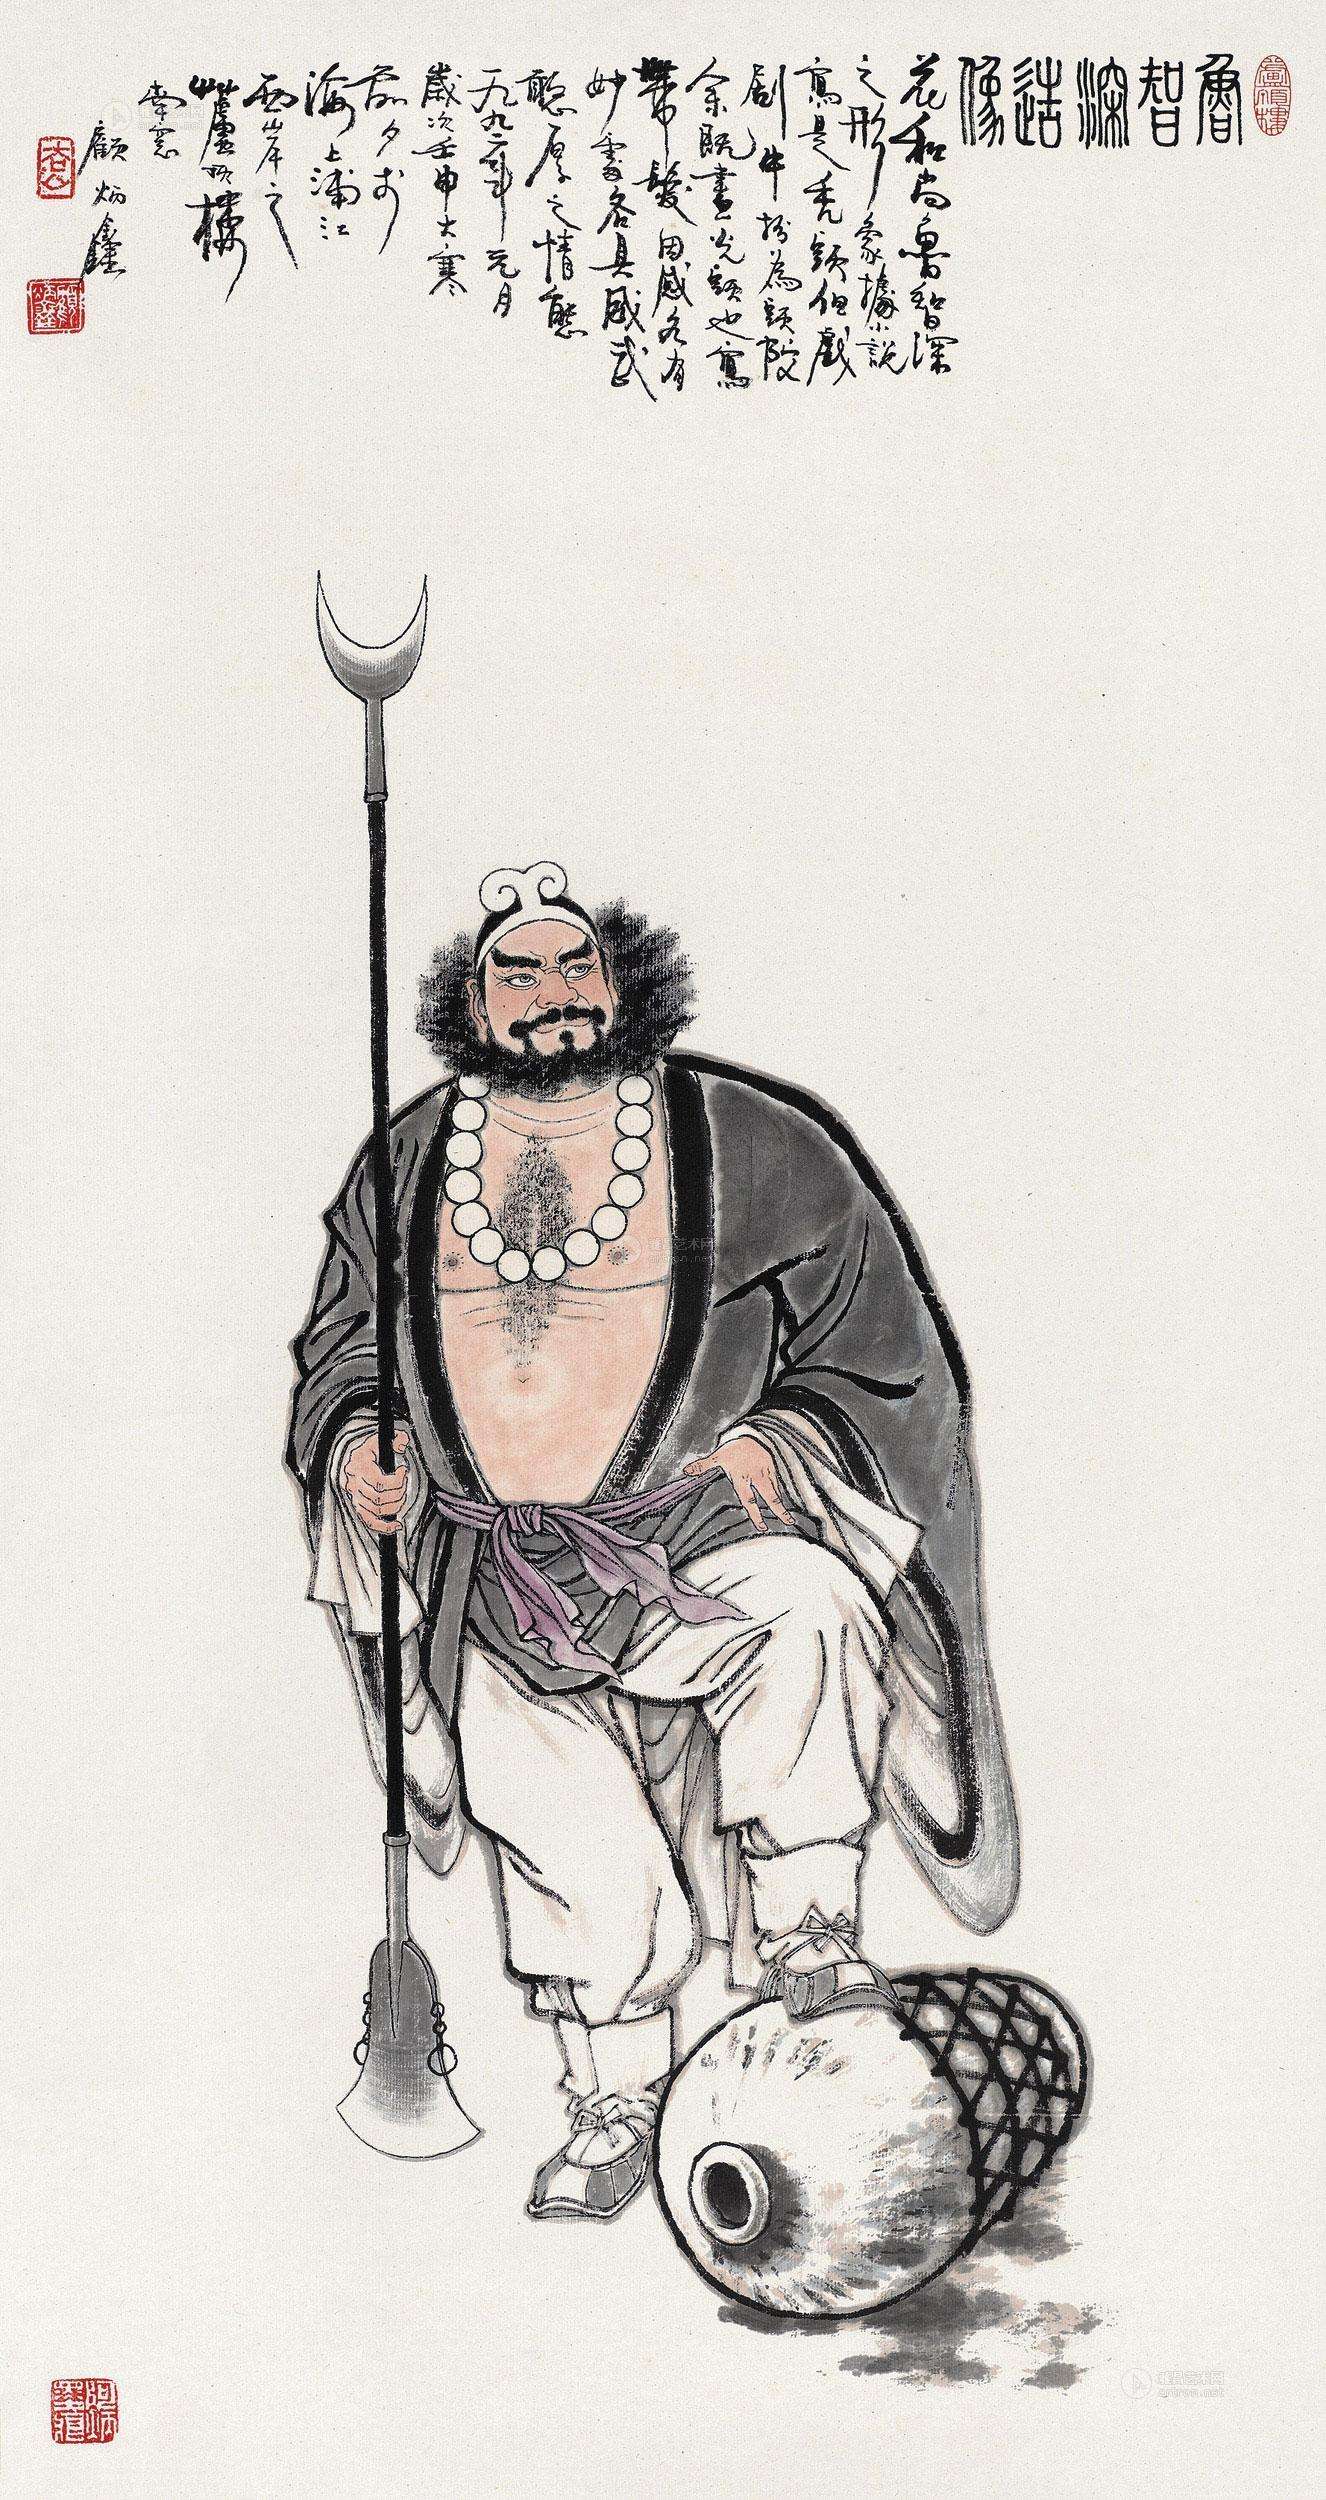 鲁智深是《水浒传》中性格最鲜明,最有光彩的人物形象,是《水浒